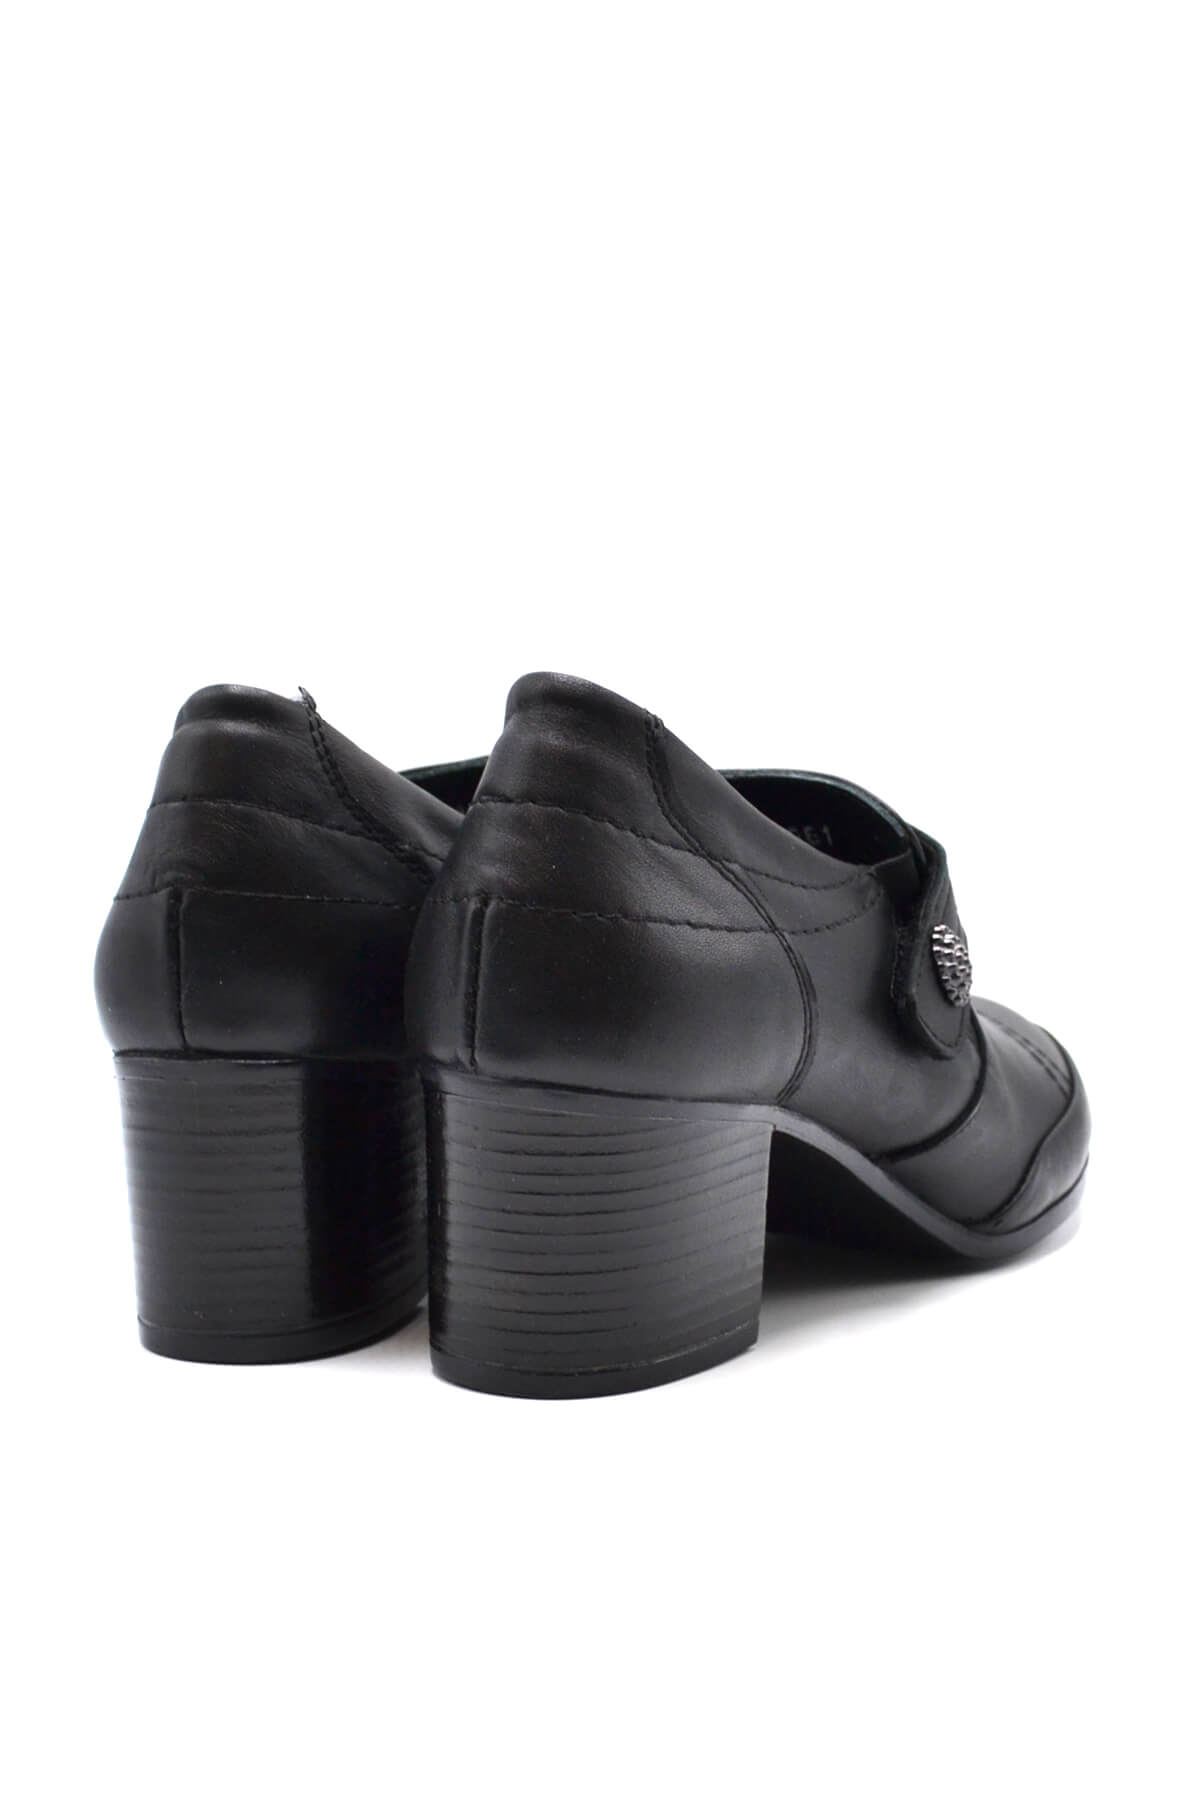 Kadın Topuklu Ayakkabı Siyah 1911961K - Thumbnail